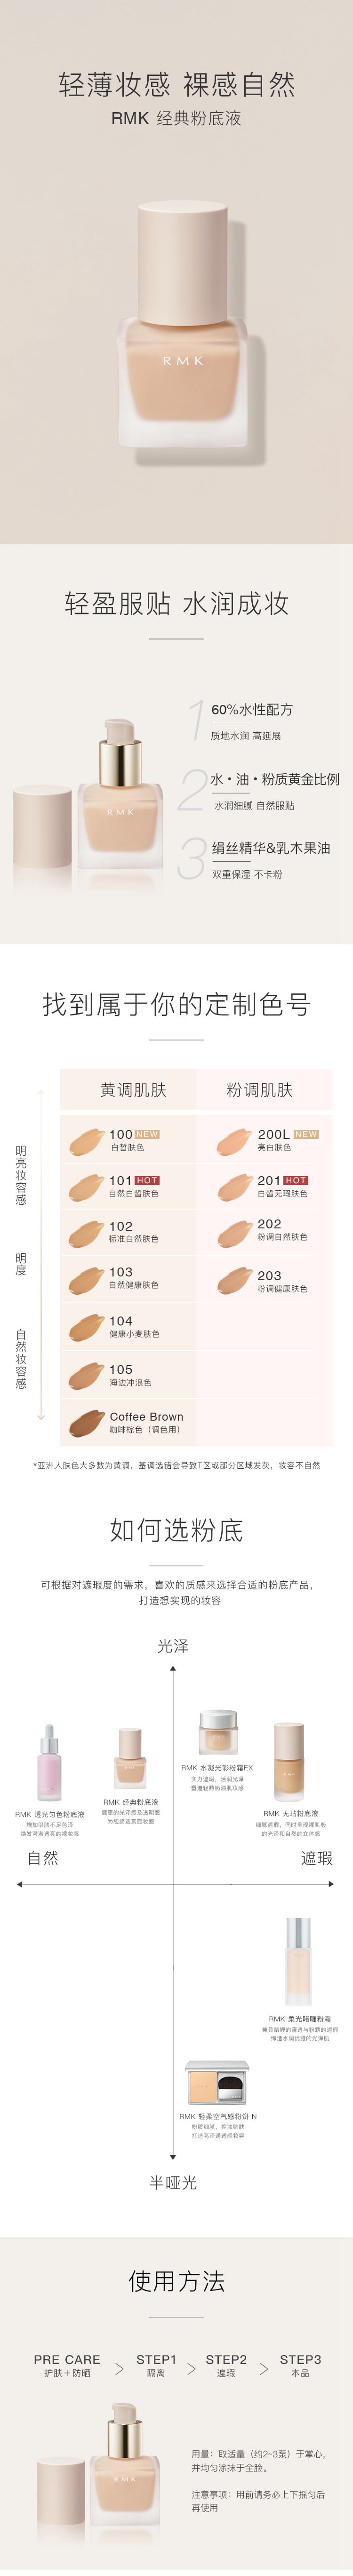 【日本直邮】日本专柜RMK  经典粉底液  SPF14++  30ml   #101自然白皙肤色